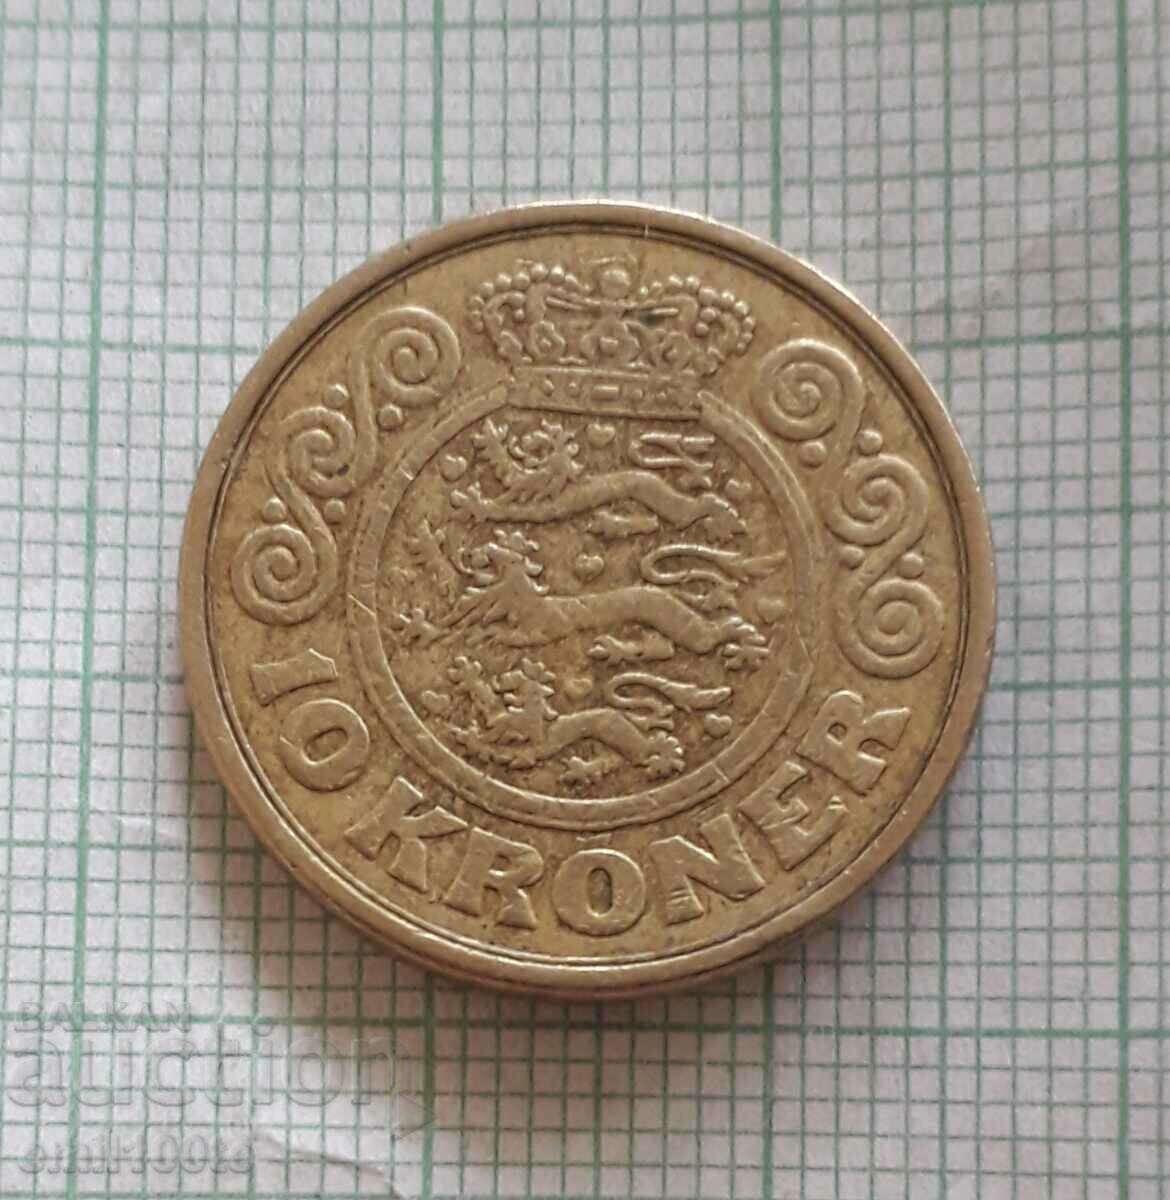 10 kroner 1989 Denmark